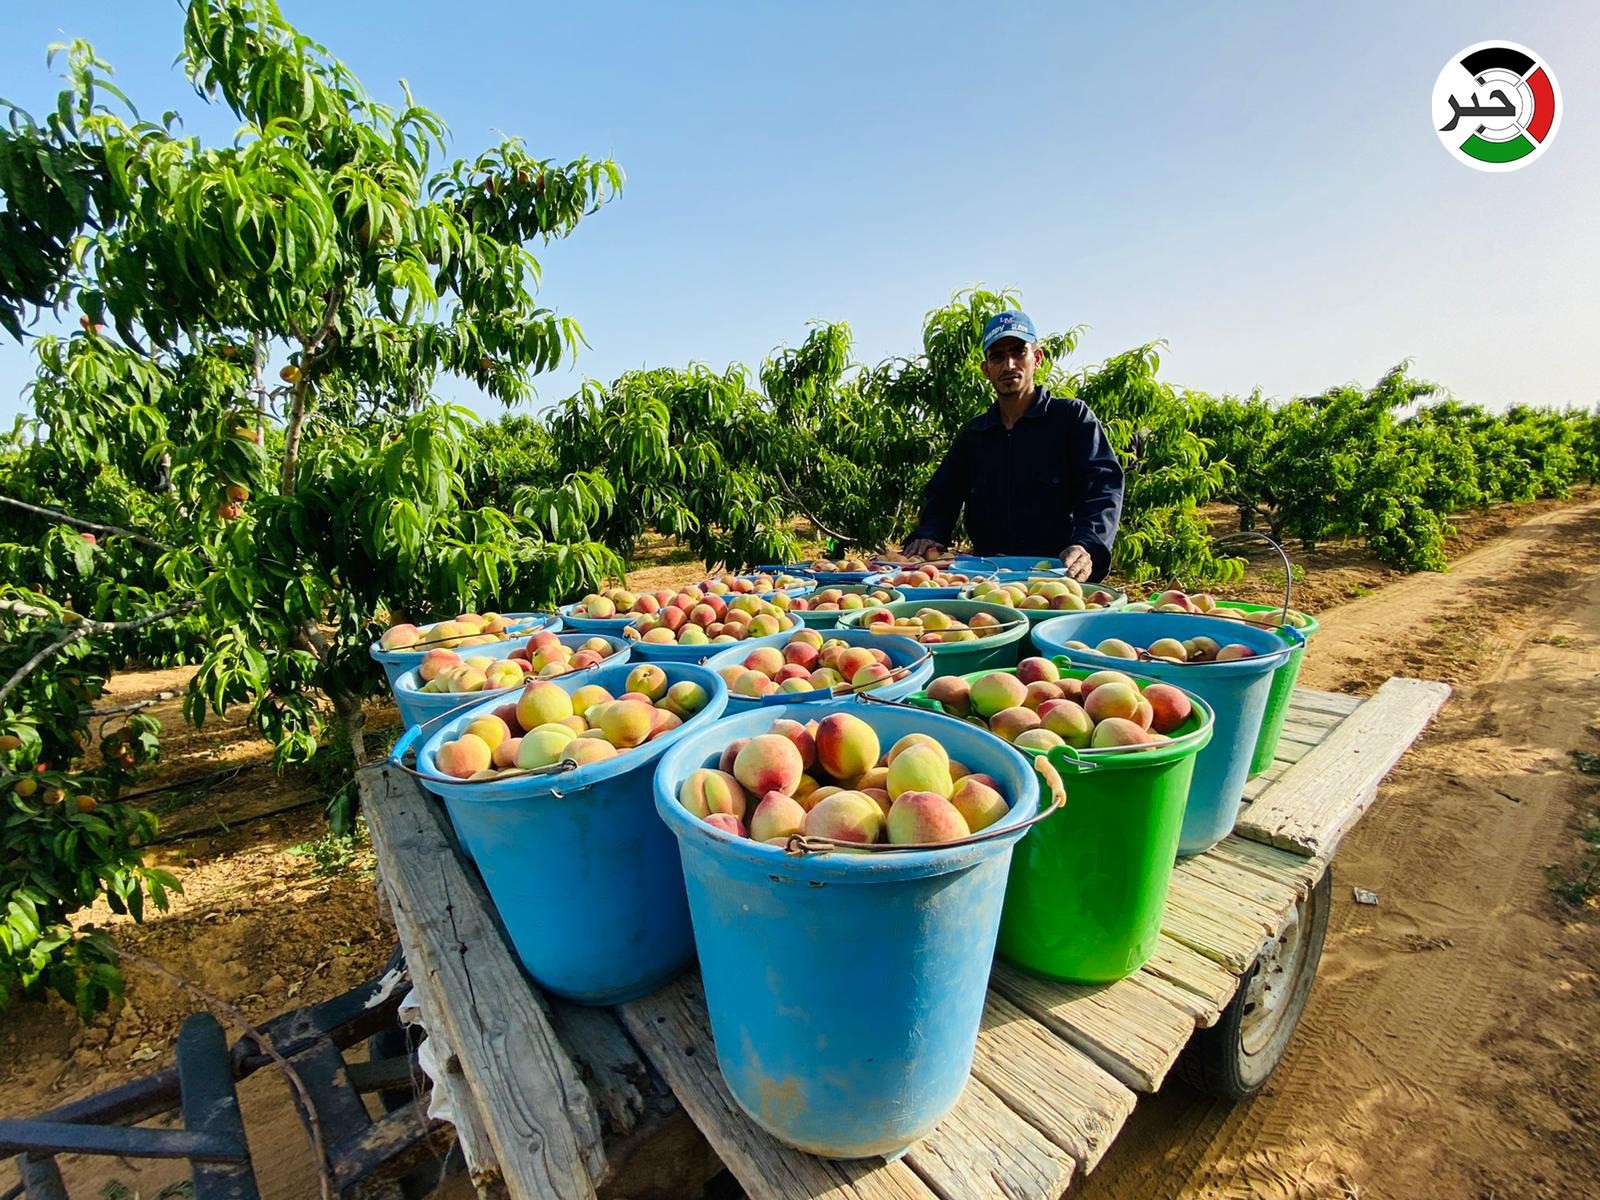 بالفيديو والصور: بدء موسم جني ثمار فاكهة "الخوخ" في قطاع غزّة